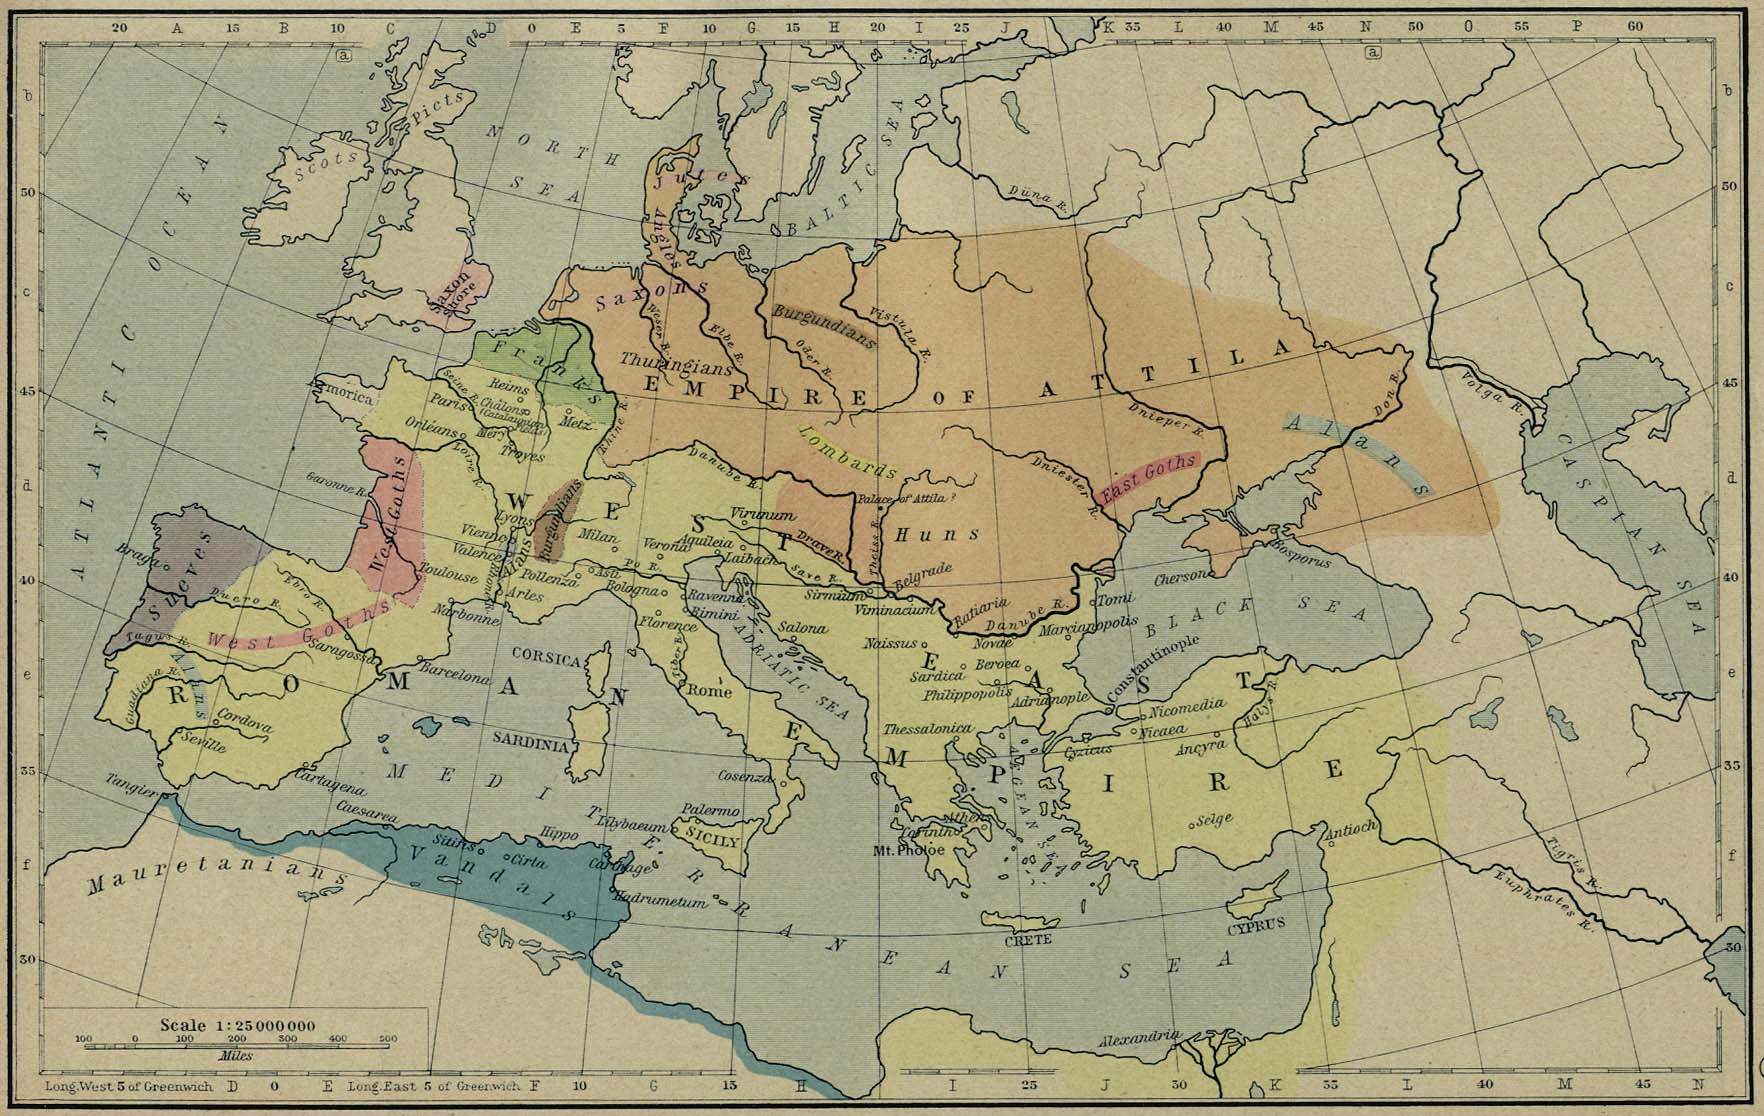 Map of Attila's Empire, the Huns - 450 AD